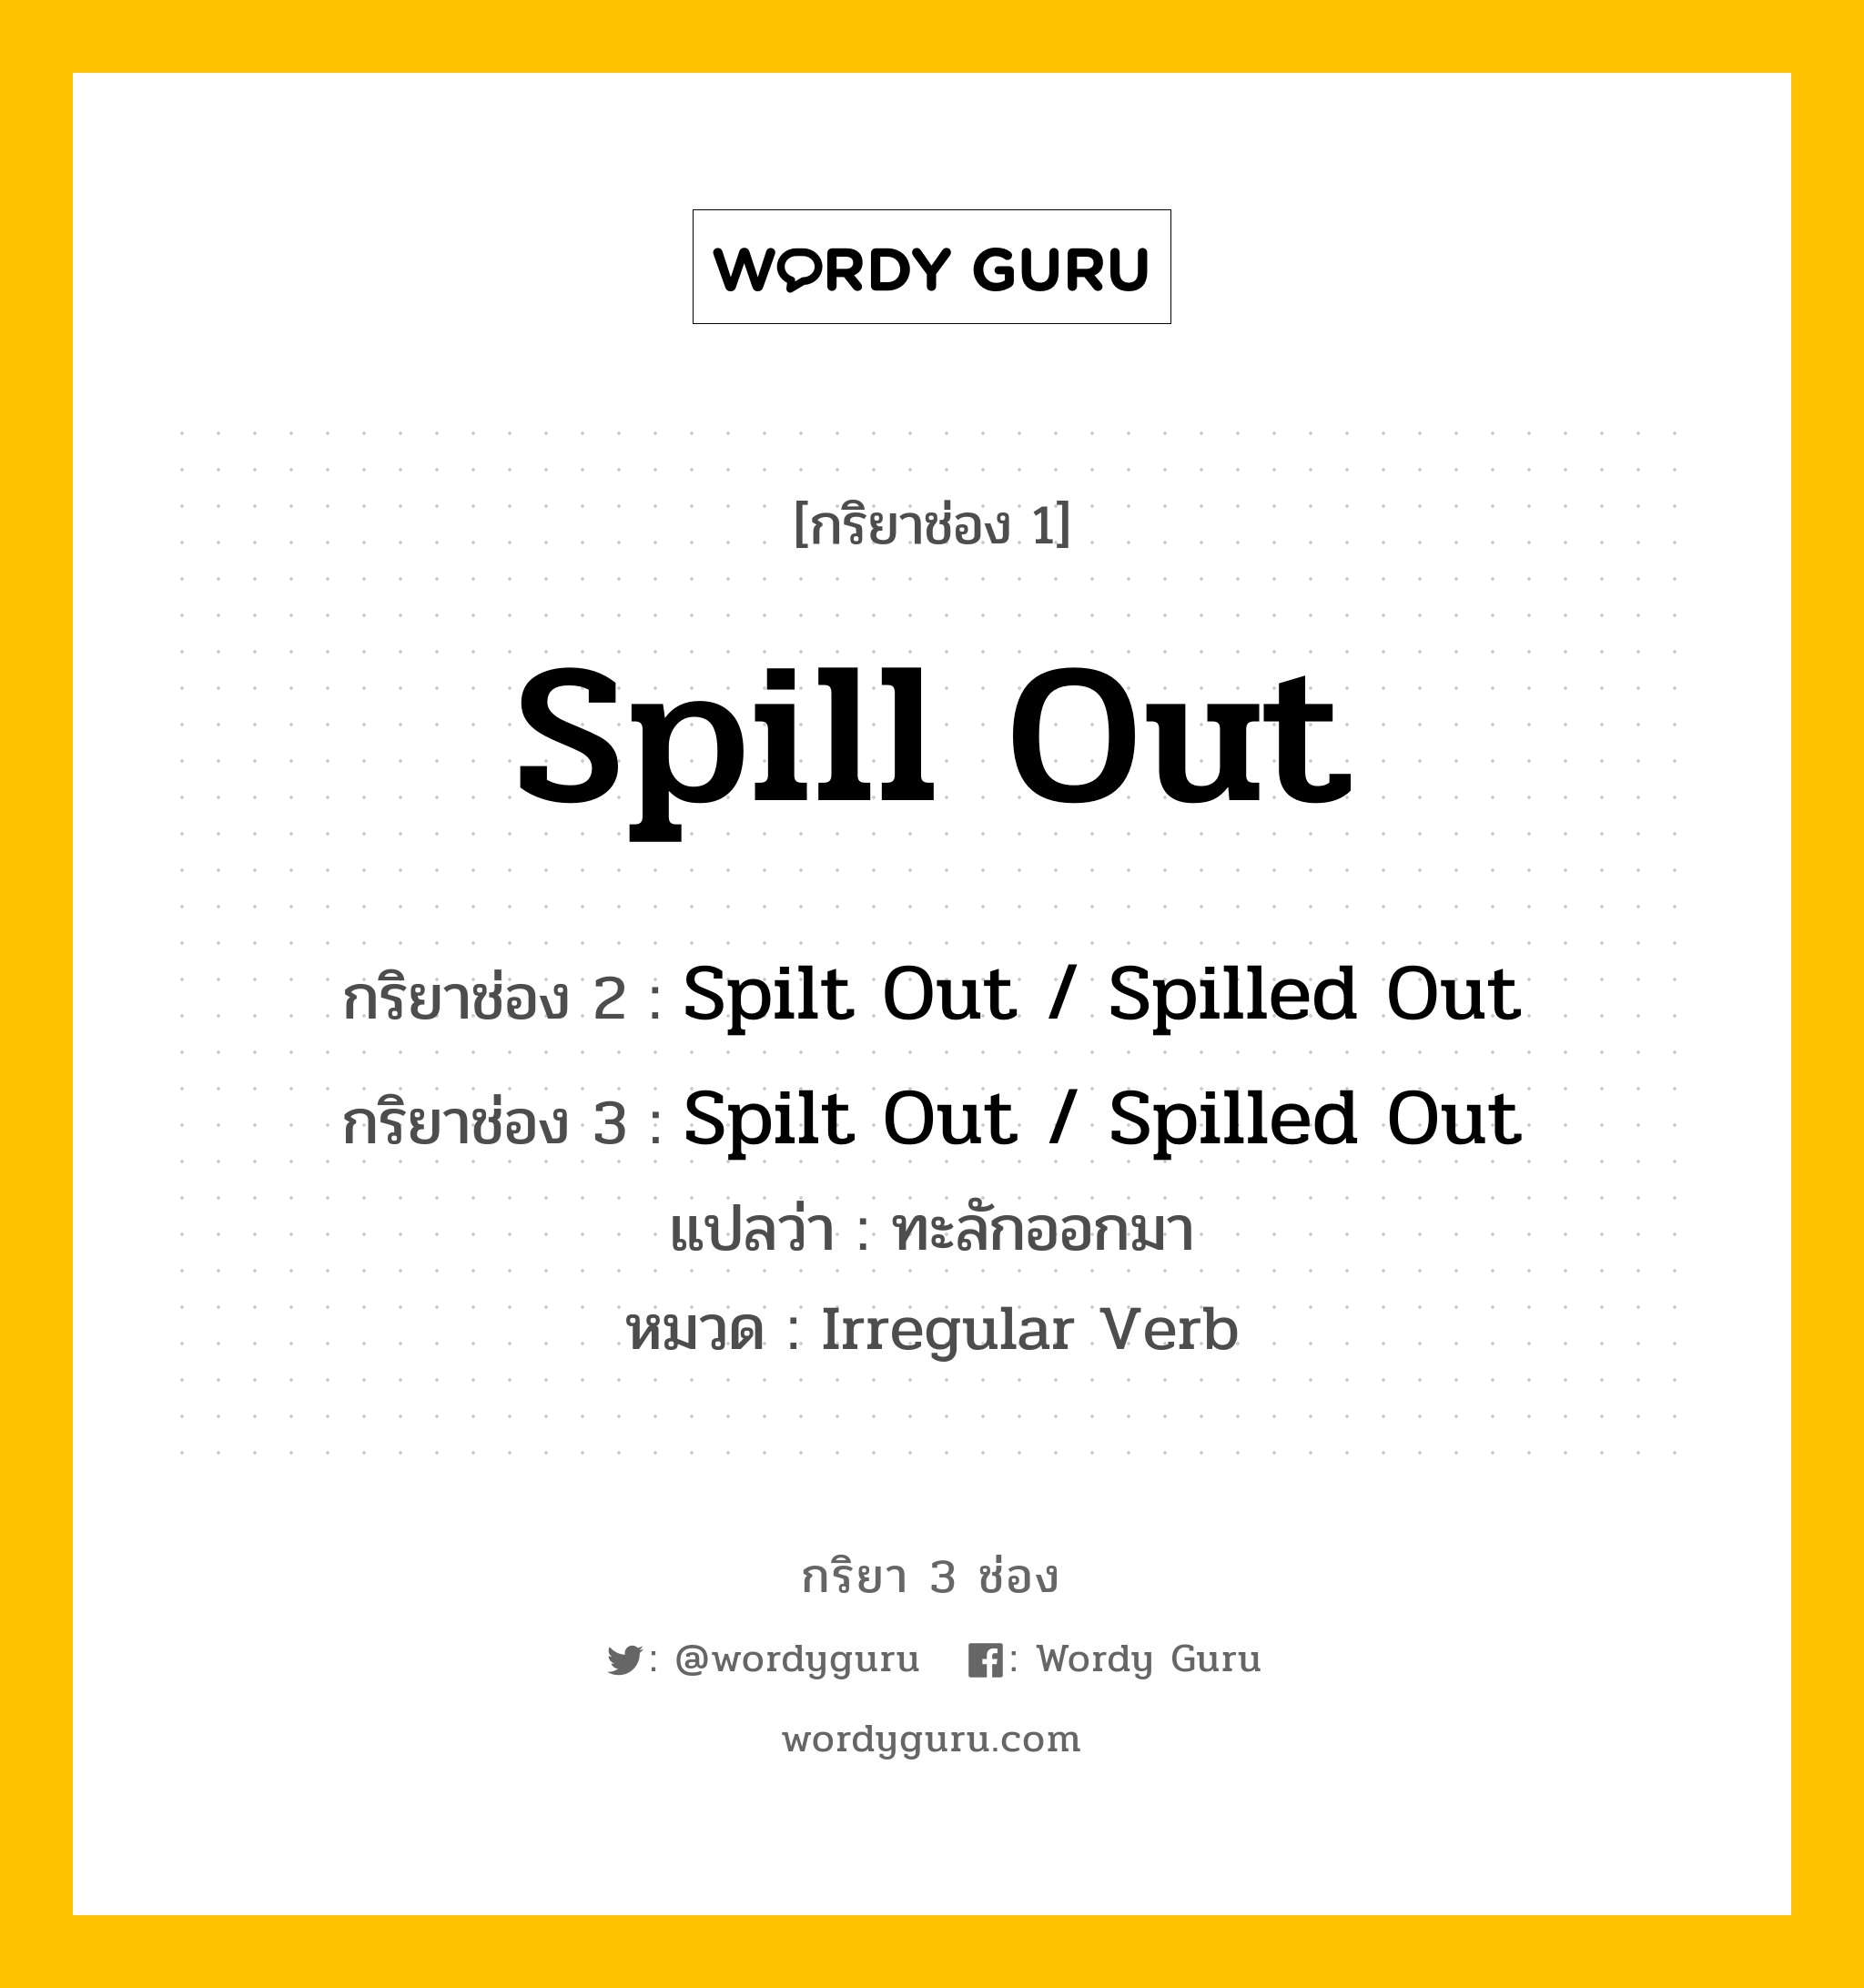 กริยา 3 ช่อง ของ Spill Out คืออะไร?, กริยาช่อง 1 Spill Out กริยาช่อง 2 Spilt Out / Spilled Out กริยาช่อง 3 Spilt Out / Spilled Out แปลว่า ทะลักออกมา หมวด Irregular Verb หมวด Irregular Verb